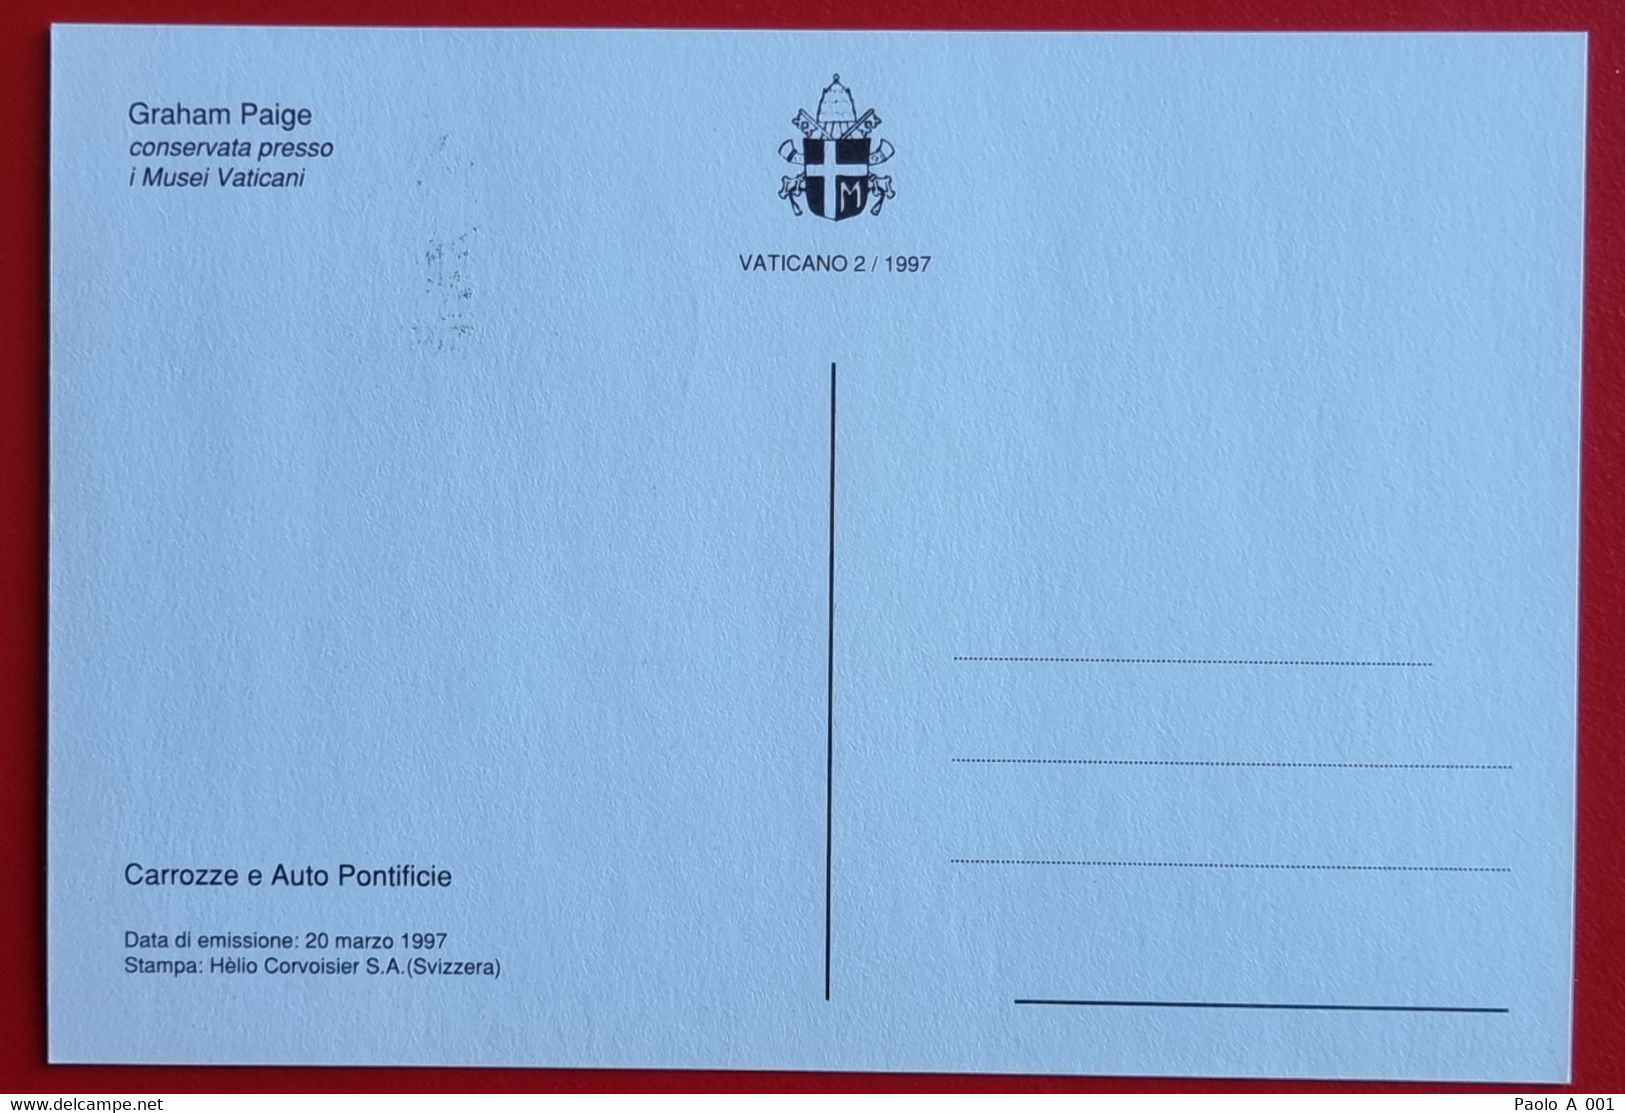 VATICANO VATIKAN VATICAN 1997 CAROZZE AUTO PONTIFICE POPE COACH CARS LIMOUSINE MAXIMUM-CARD GRAHAM PAIGE - Lettres & Documents